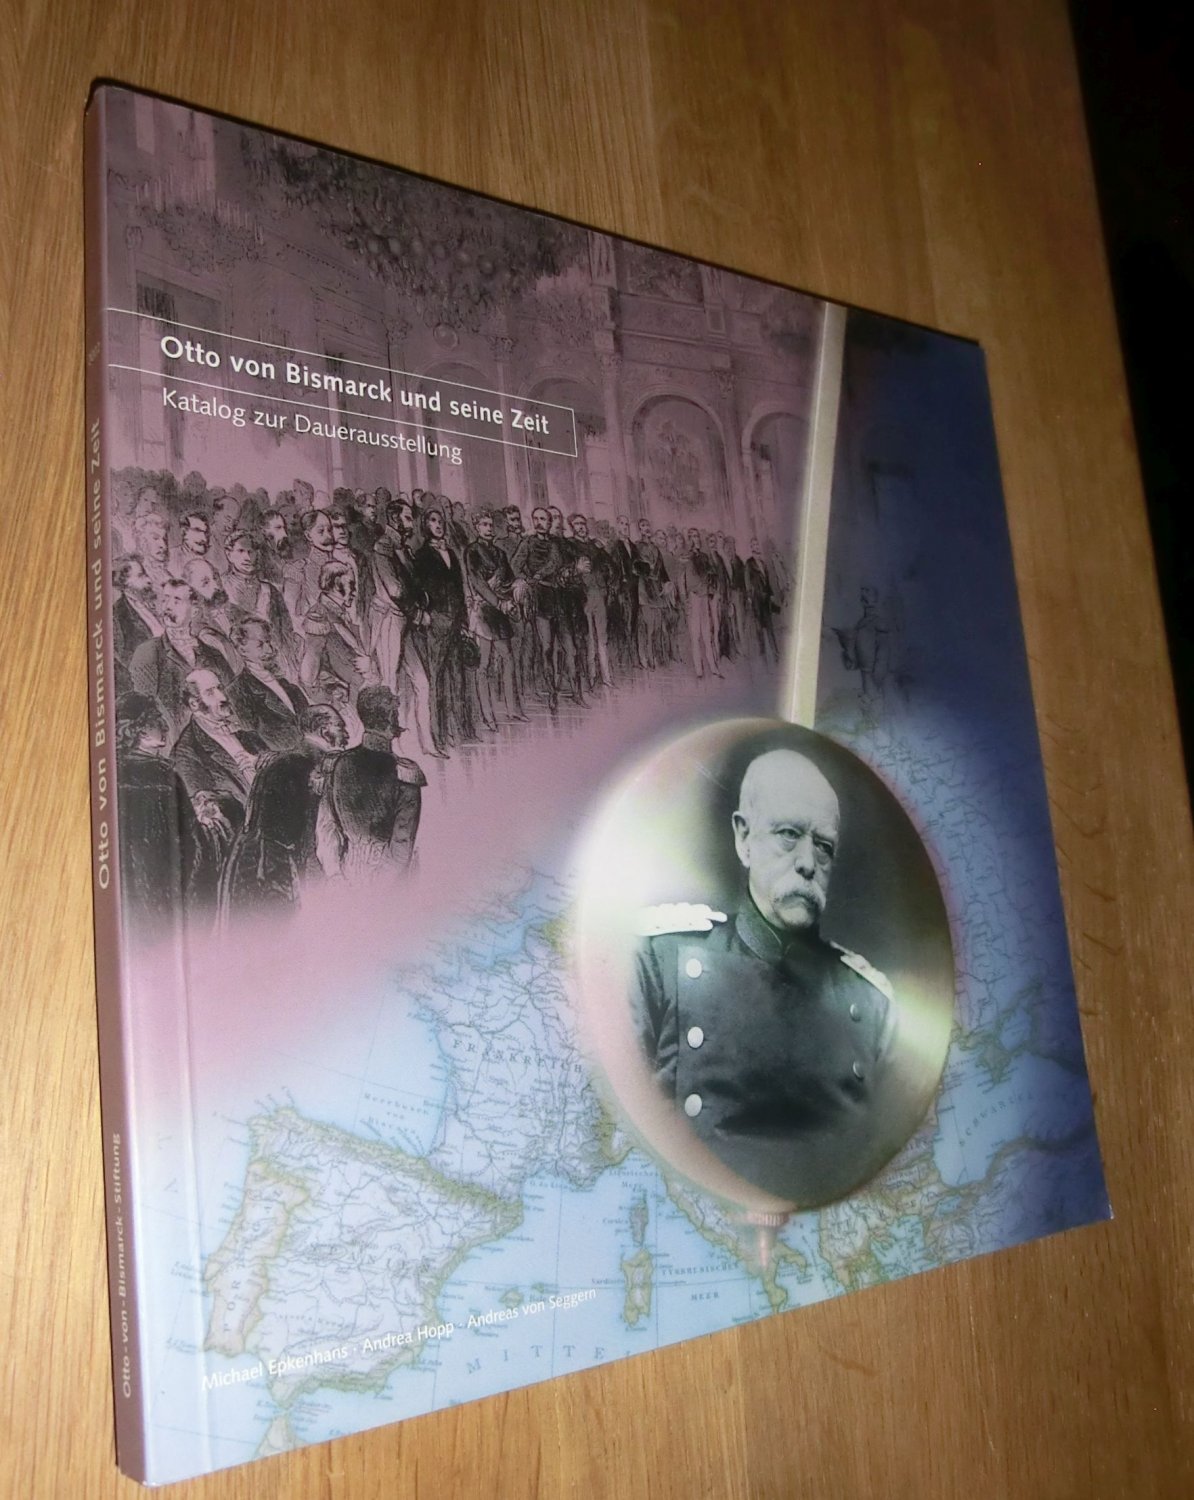 Otto von Bismarck und seine Zeit Katalog zur Dauerausstellung - Michael epkenhans